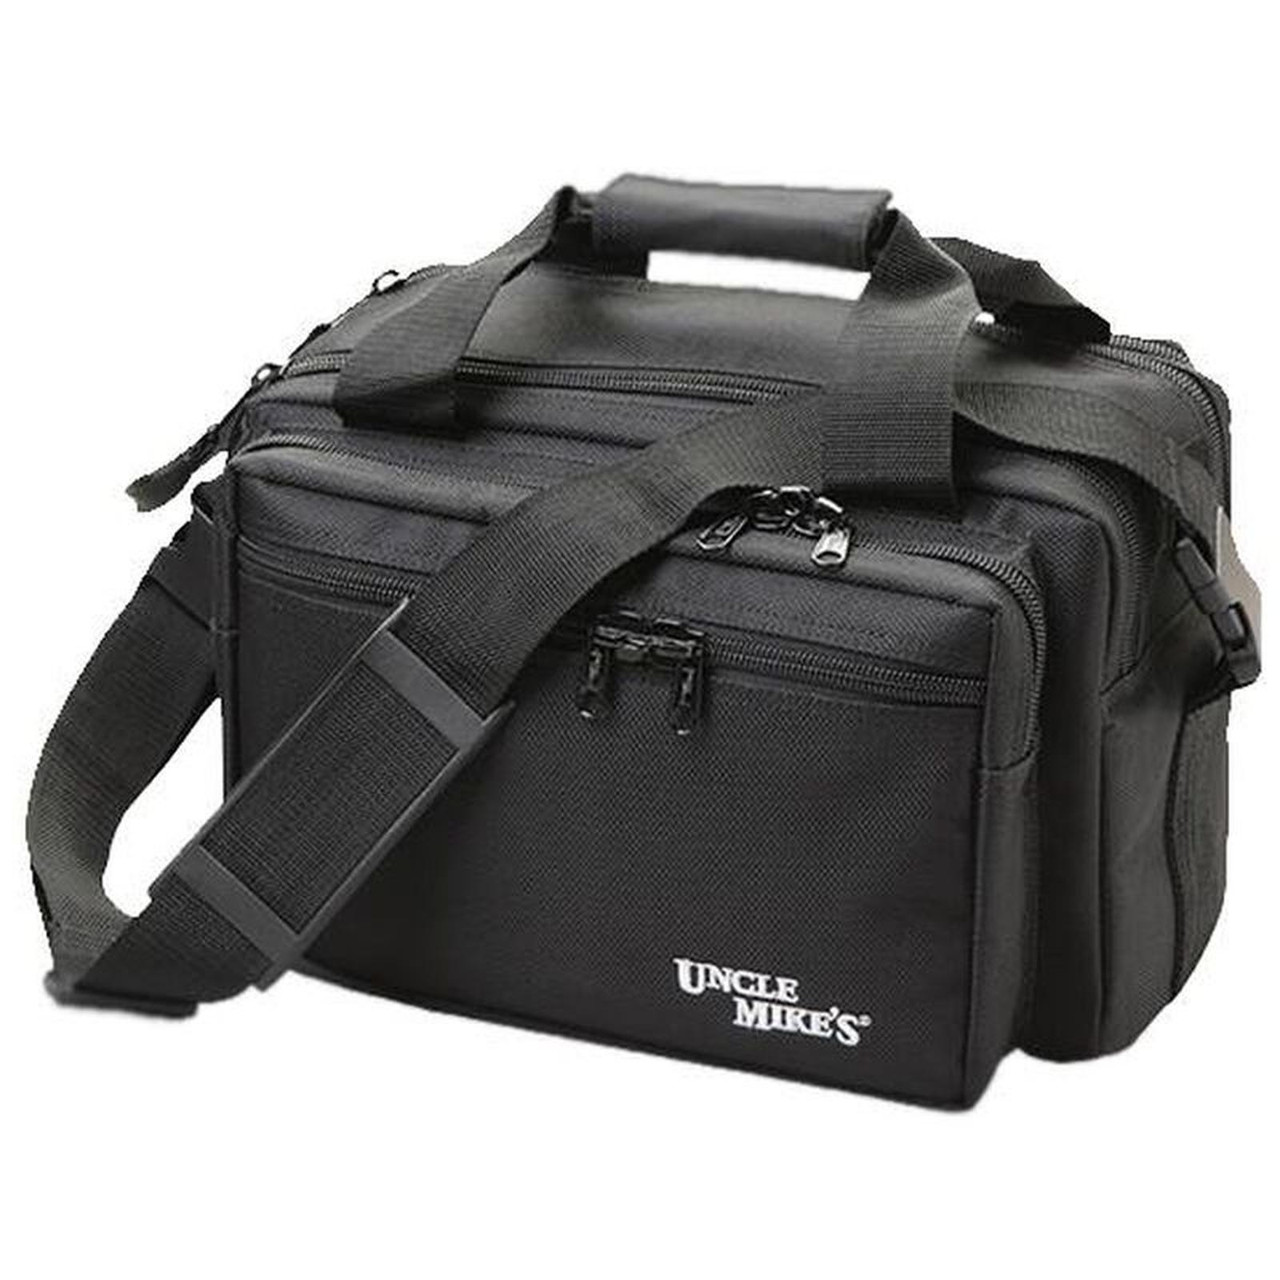 Uncle Mike's Side Armor Soft Range Bag 17